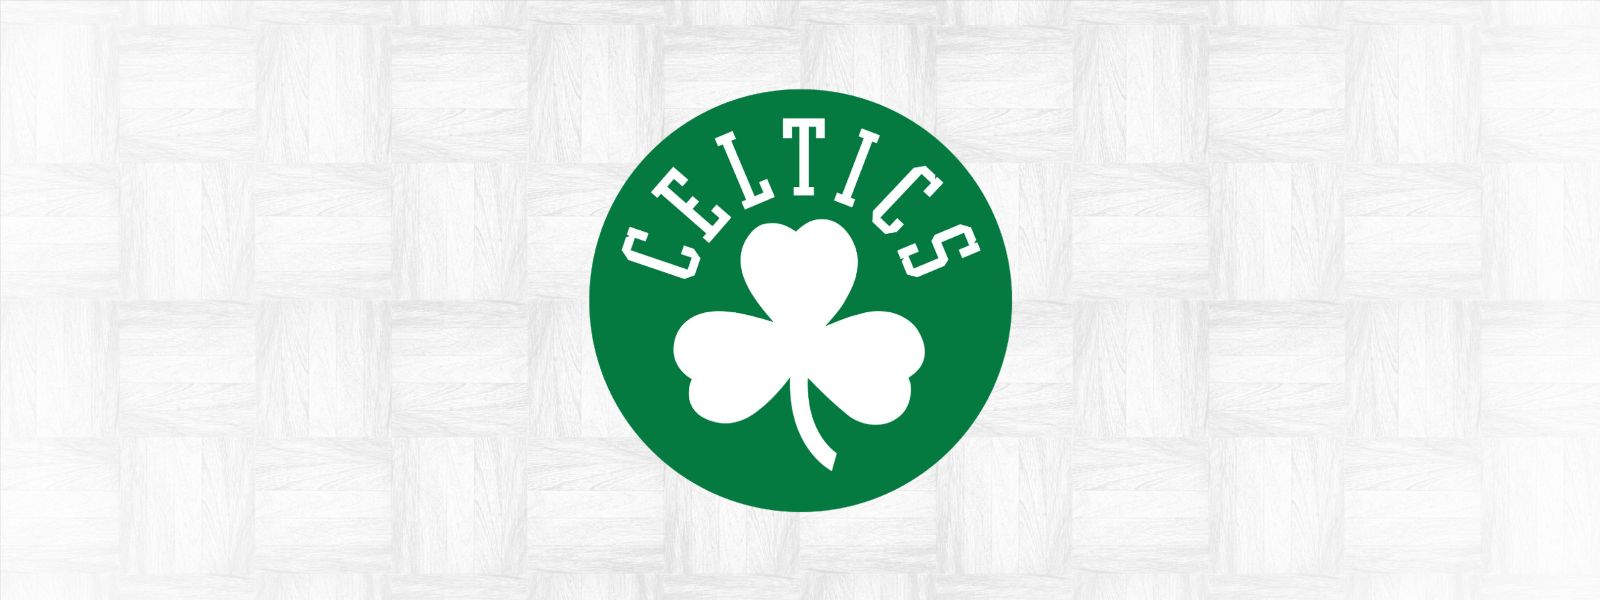 More Info for Celtics vs. Heat 